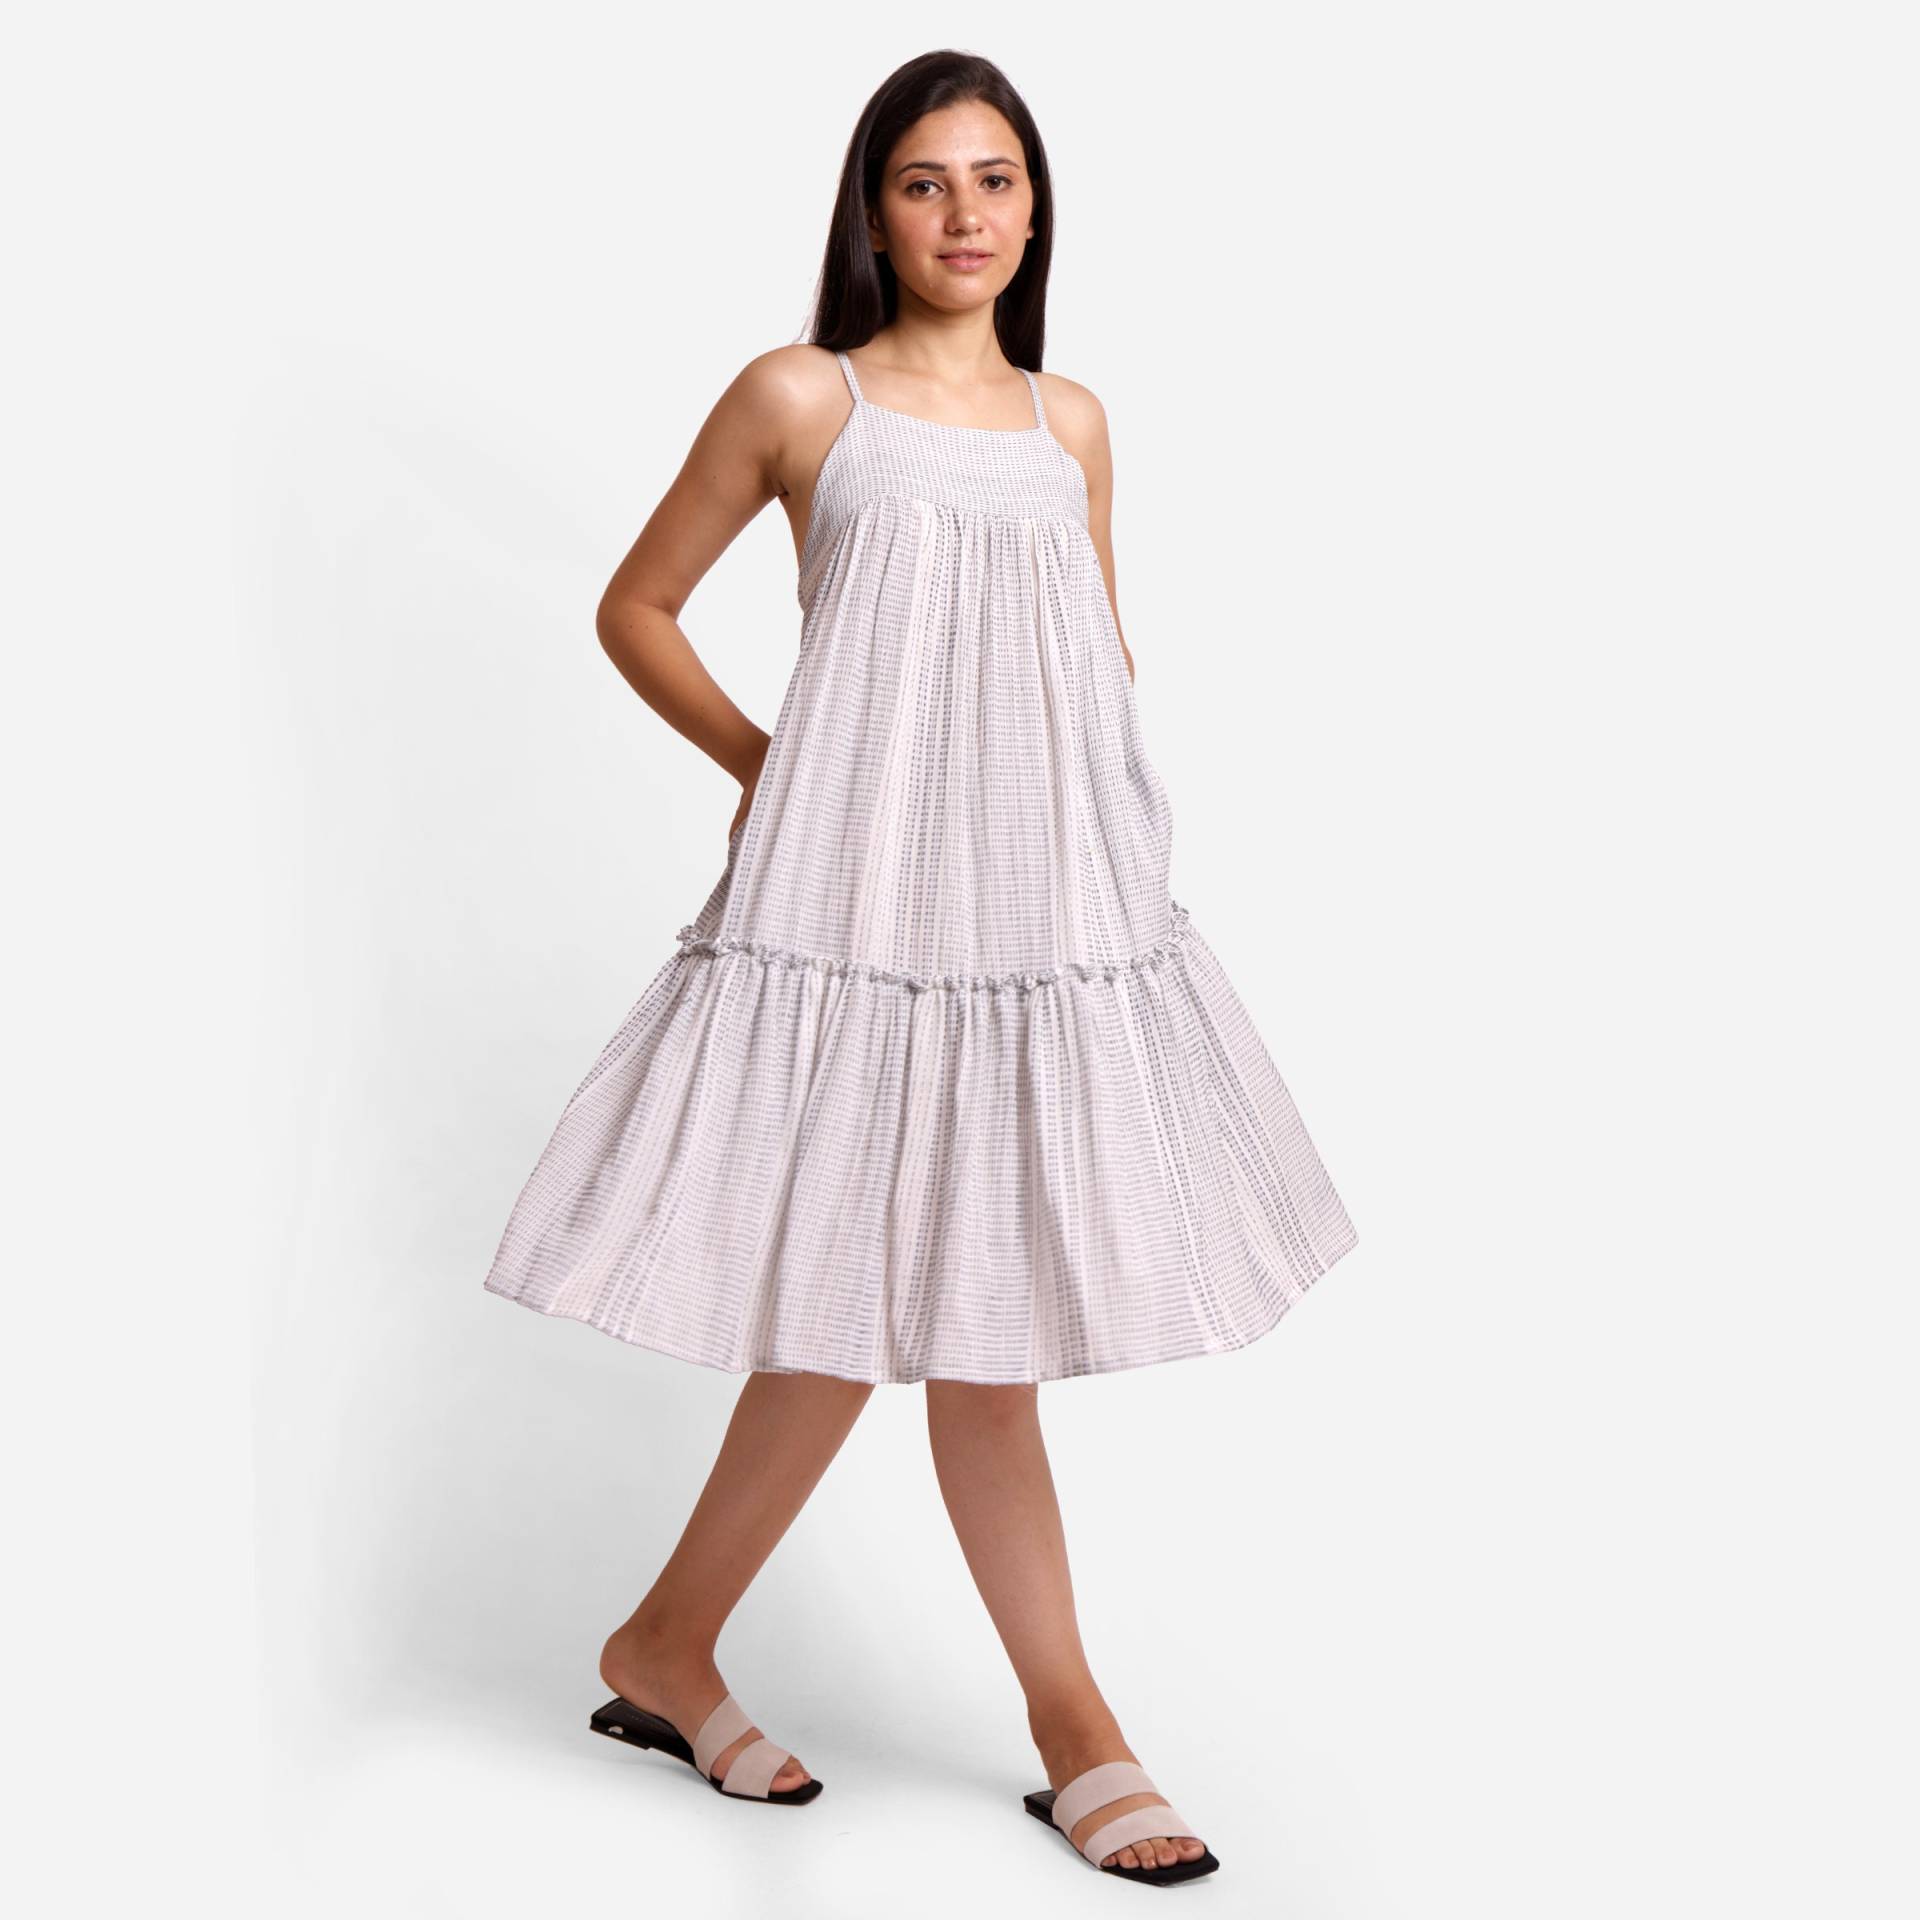 Weiß 100% Baumwolle Camisole Kleid, Sommerkleid Raffung Kleid Mit Taschen, Anpassbar, Plus Größe, Petite, Tall Etsw von SeamsFriendlyIndia